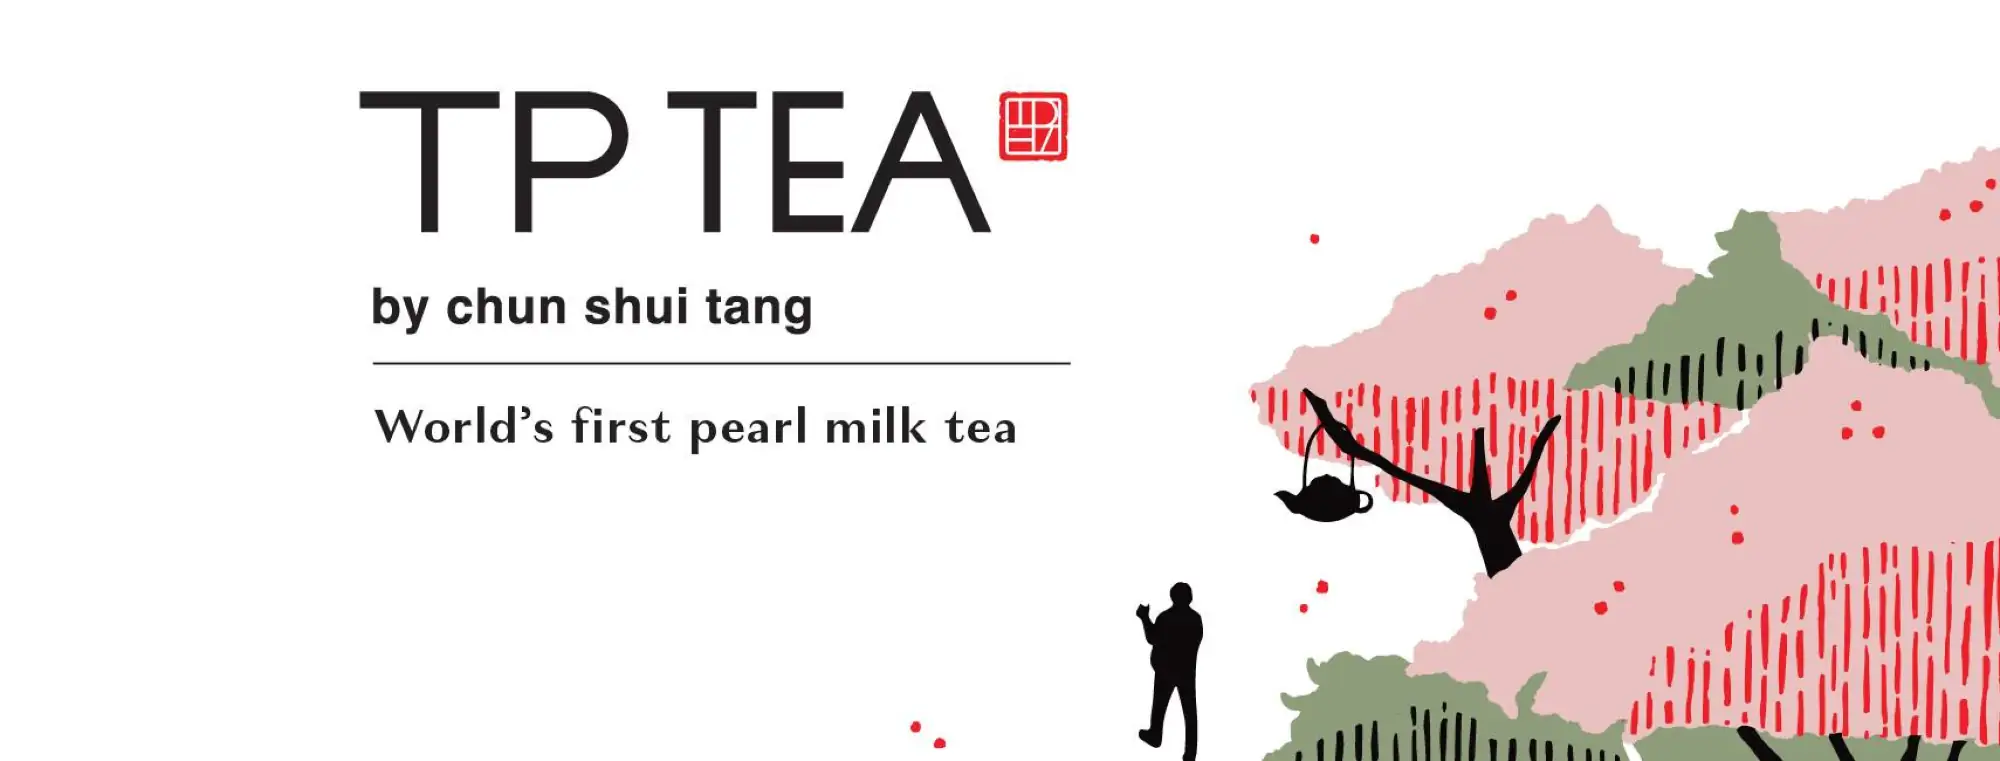 台湾创始珍珠奶茶品牌春水堂即将进军泰国曼谷（图片来源：春水堂泰国“TP TEA by chun shui tang）